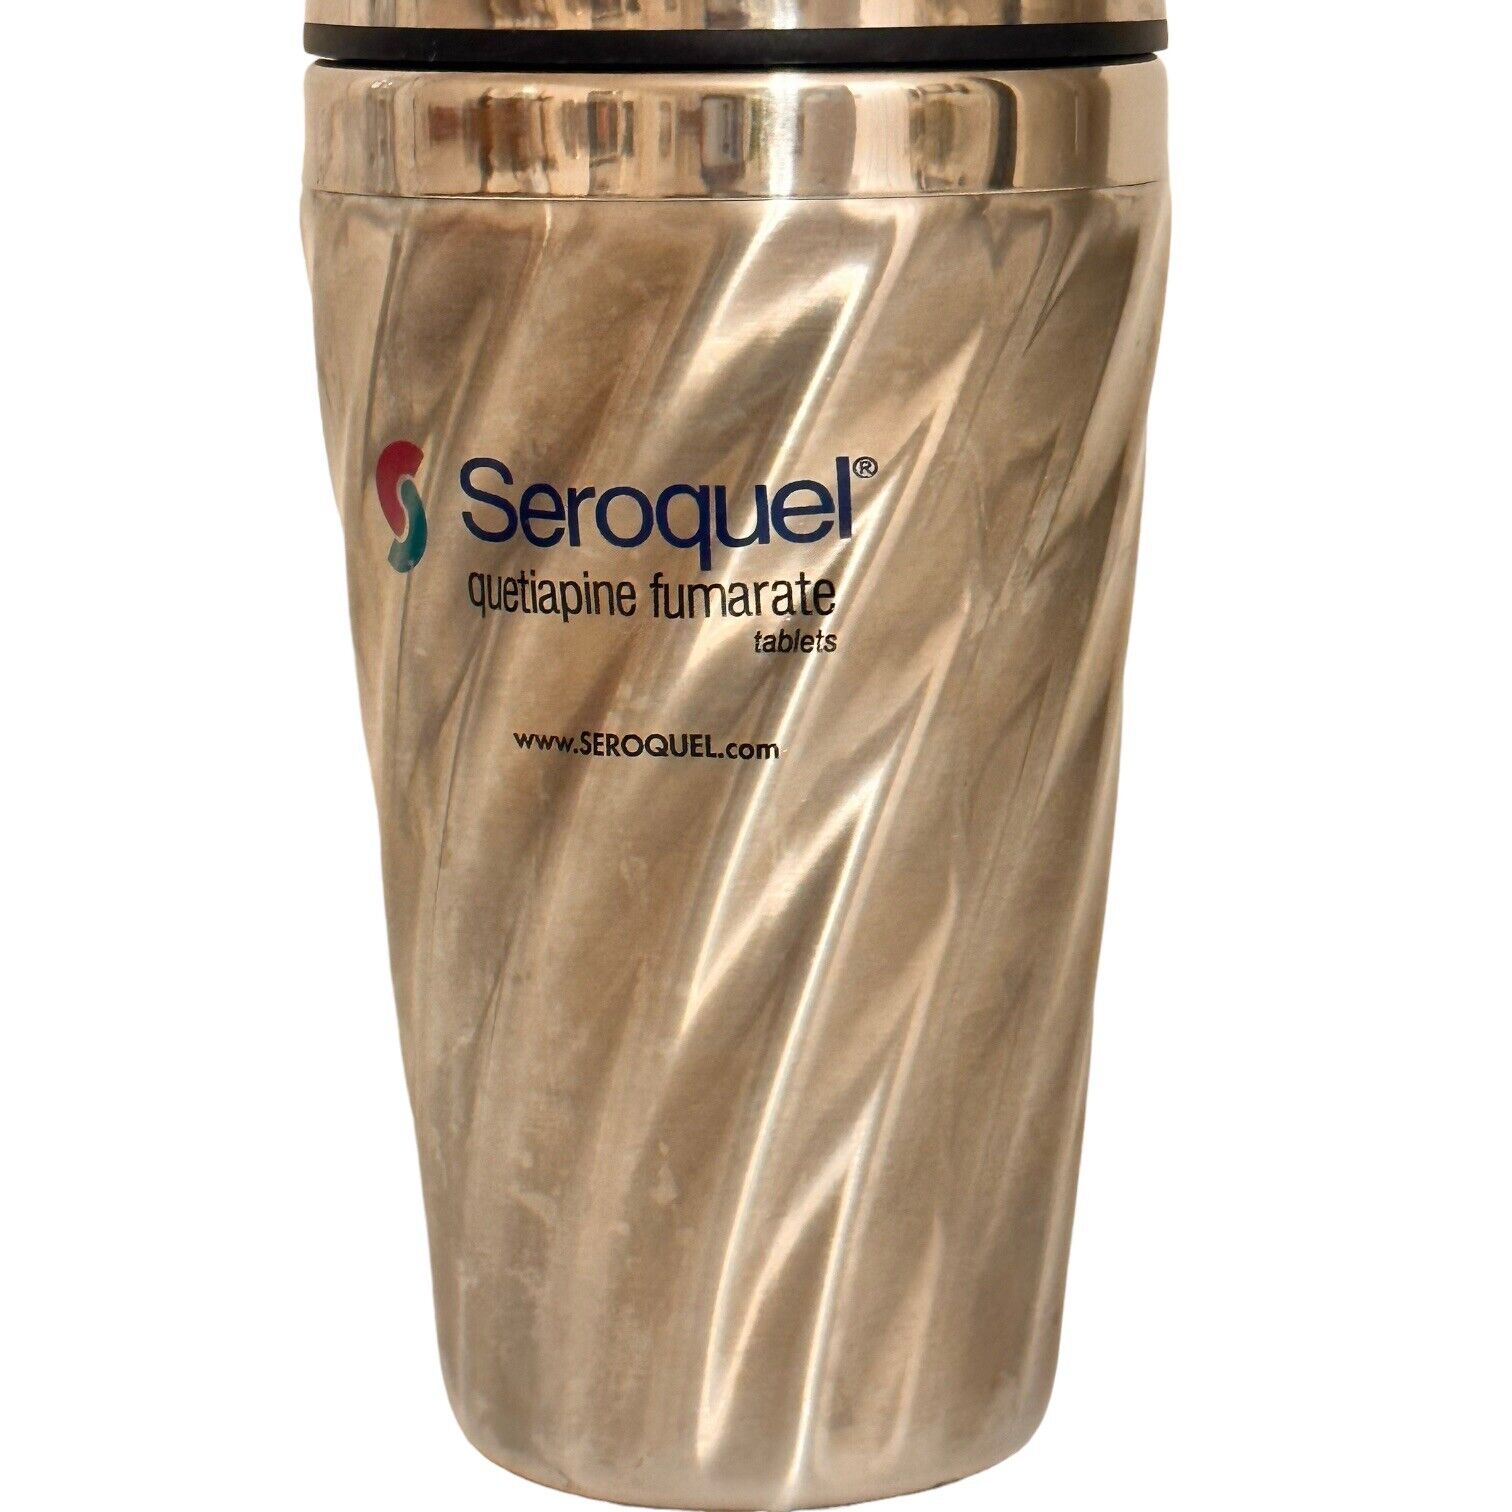 Seroquel Pharmaceutical Drug Rep Coffee Tumbler Advertising Quetiapine Fumarate